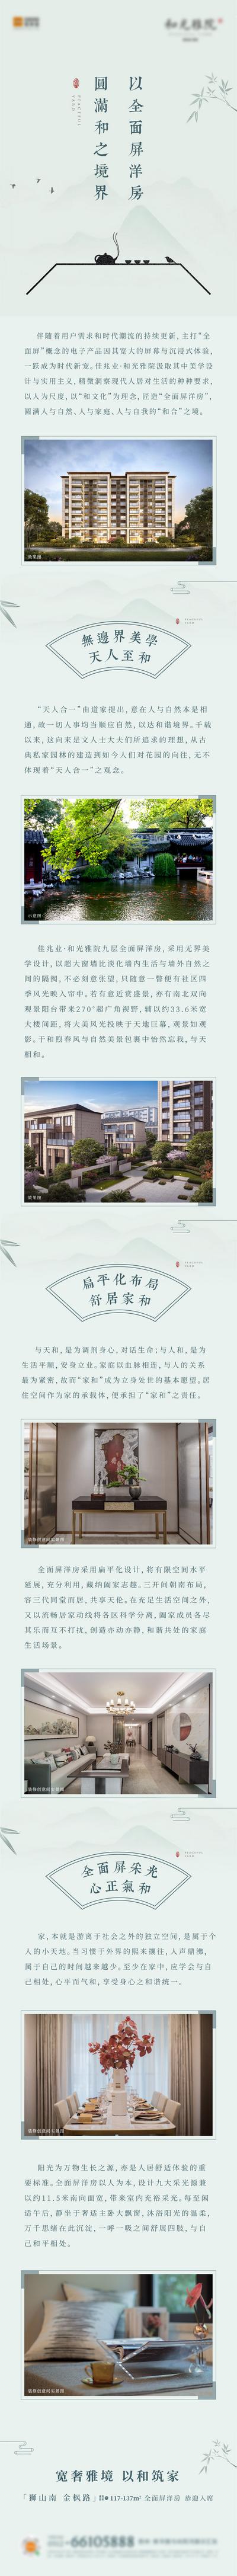 南门网 专题设计 长图 房地产 价值点 苏州 园林 新中式 绿色 雅致 竹子 书法